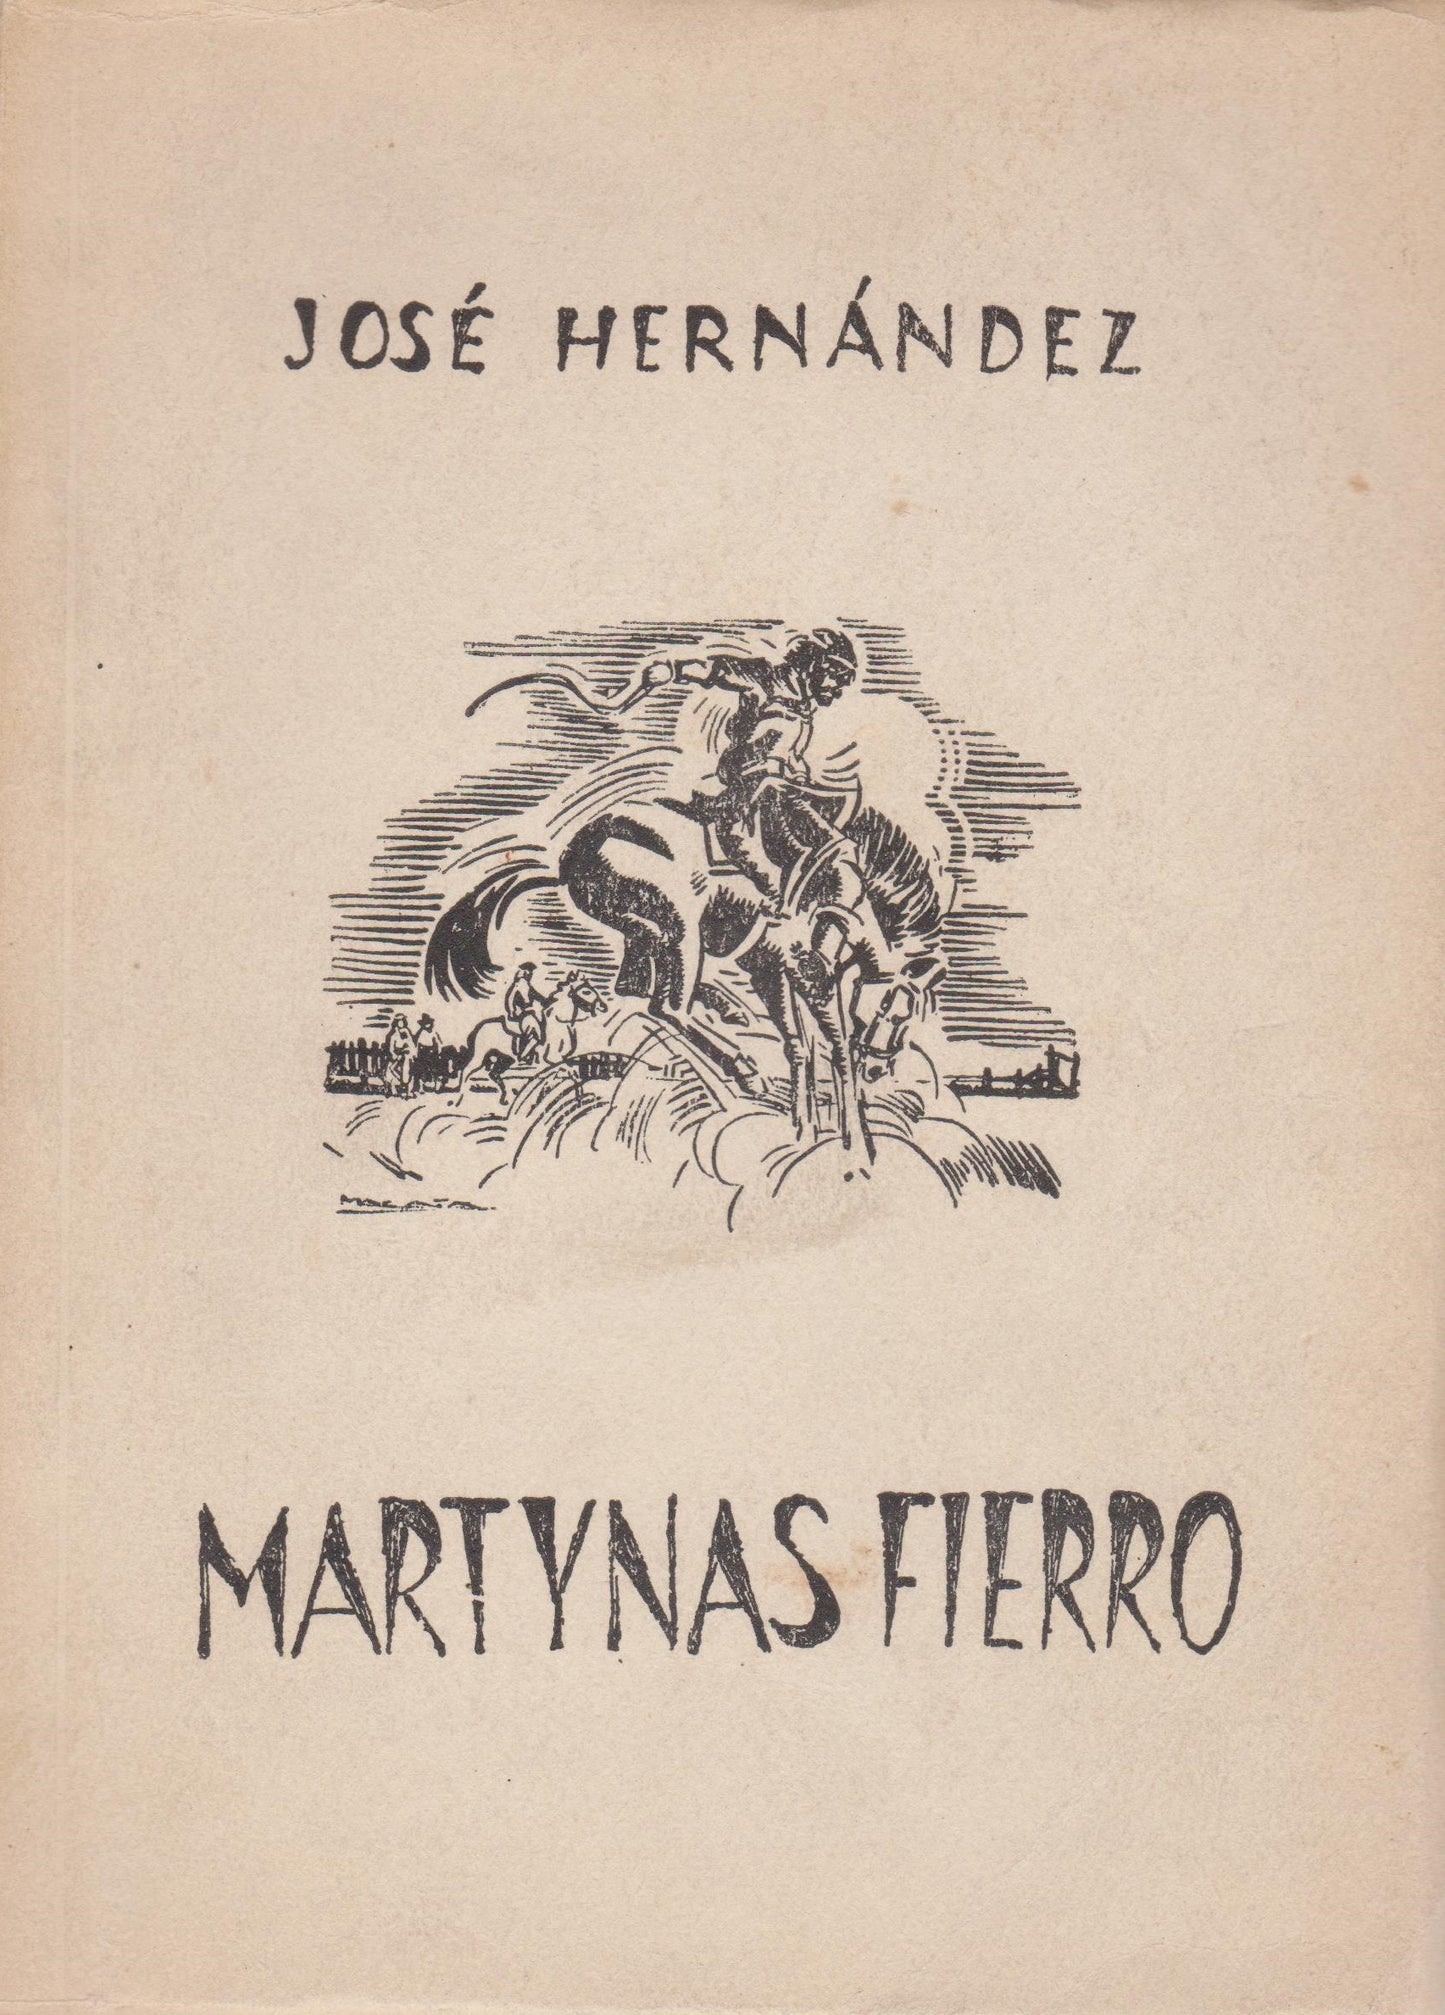 Jose Hernandez - Martynas Fierro, Buenos Aires, 1958 m.